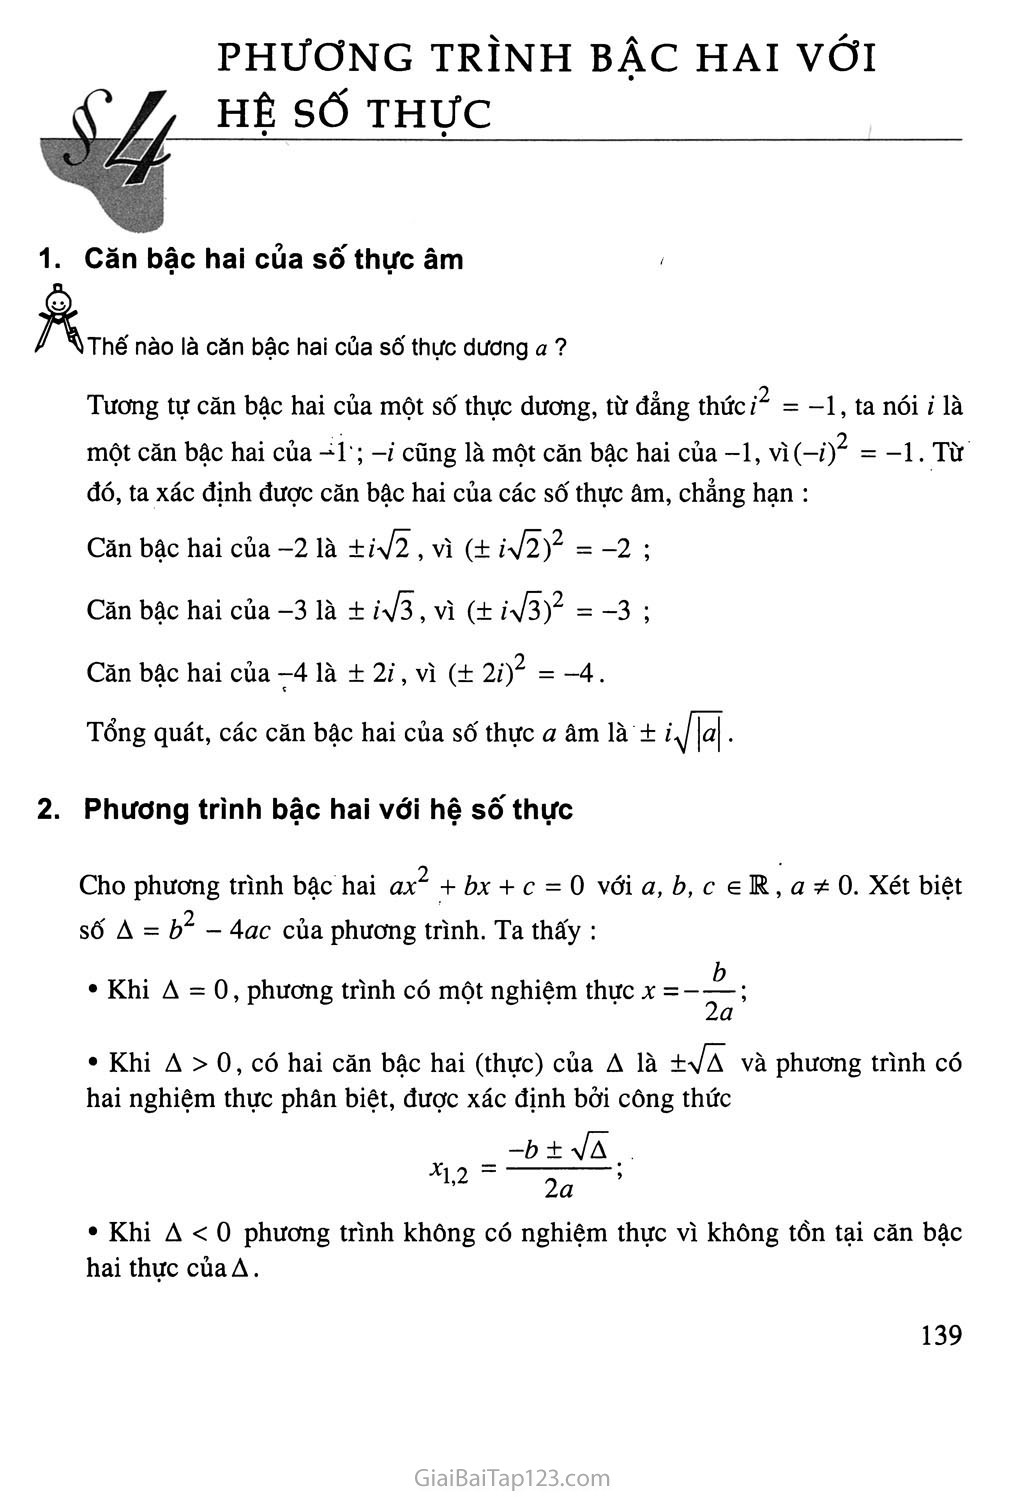 Bài 4. Phương trình bậc hai với hệ số thực - Bài đọc thêm: Phương trình đại số trang 1